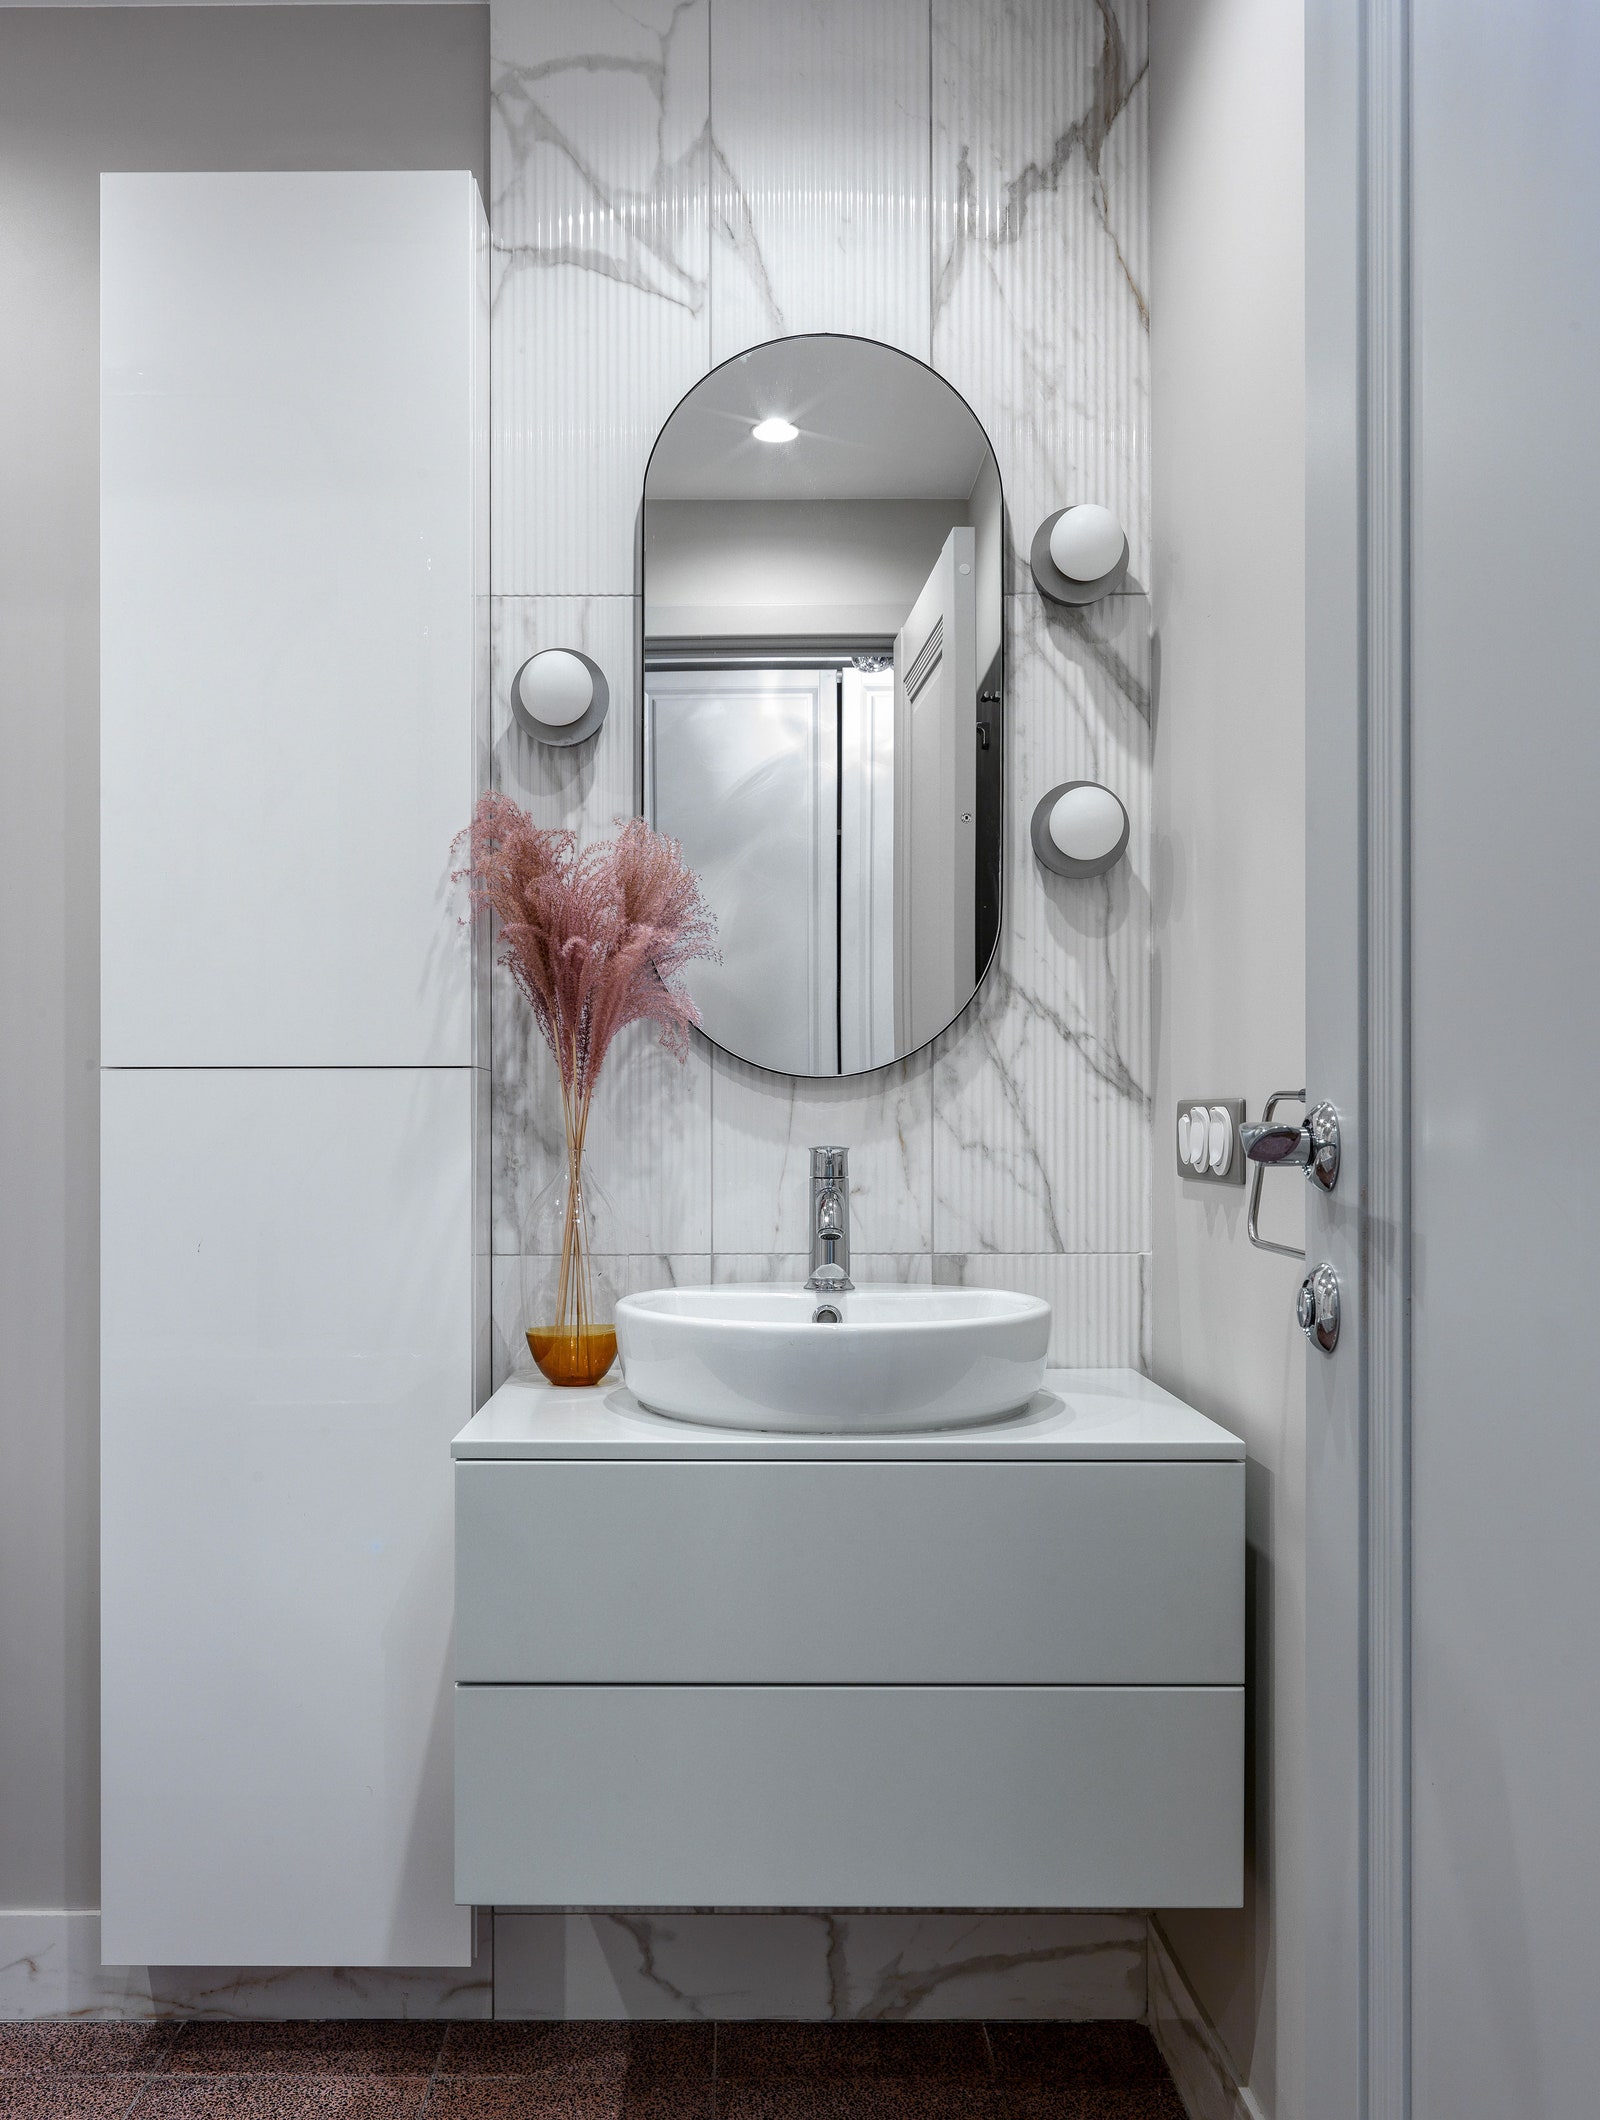 Фрагмент ванной. Подстолье для раковины сделано на заказ шкаф IKEA бра Eglo зеркало Banska стены отделаны керамогранитом...